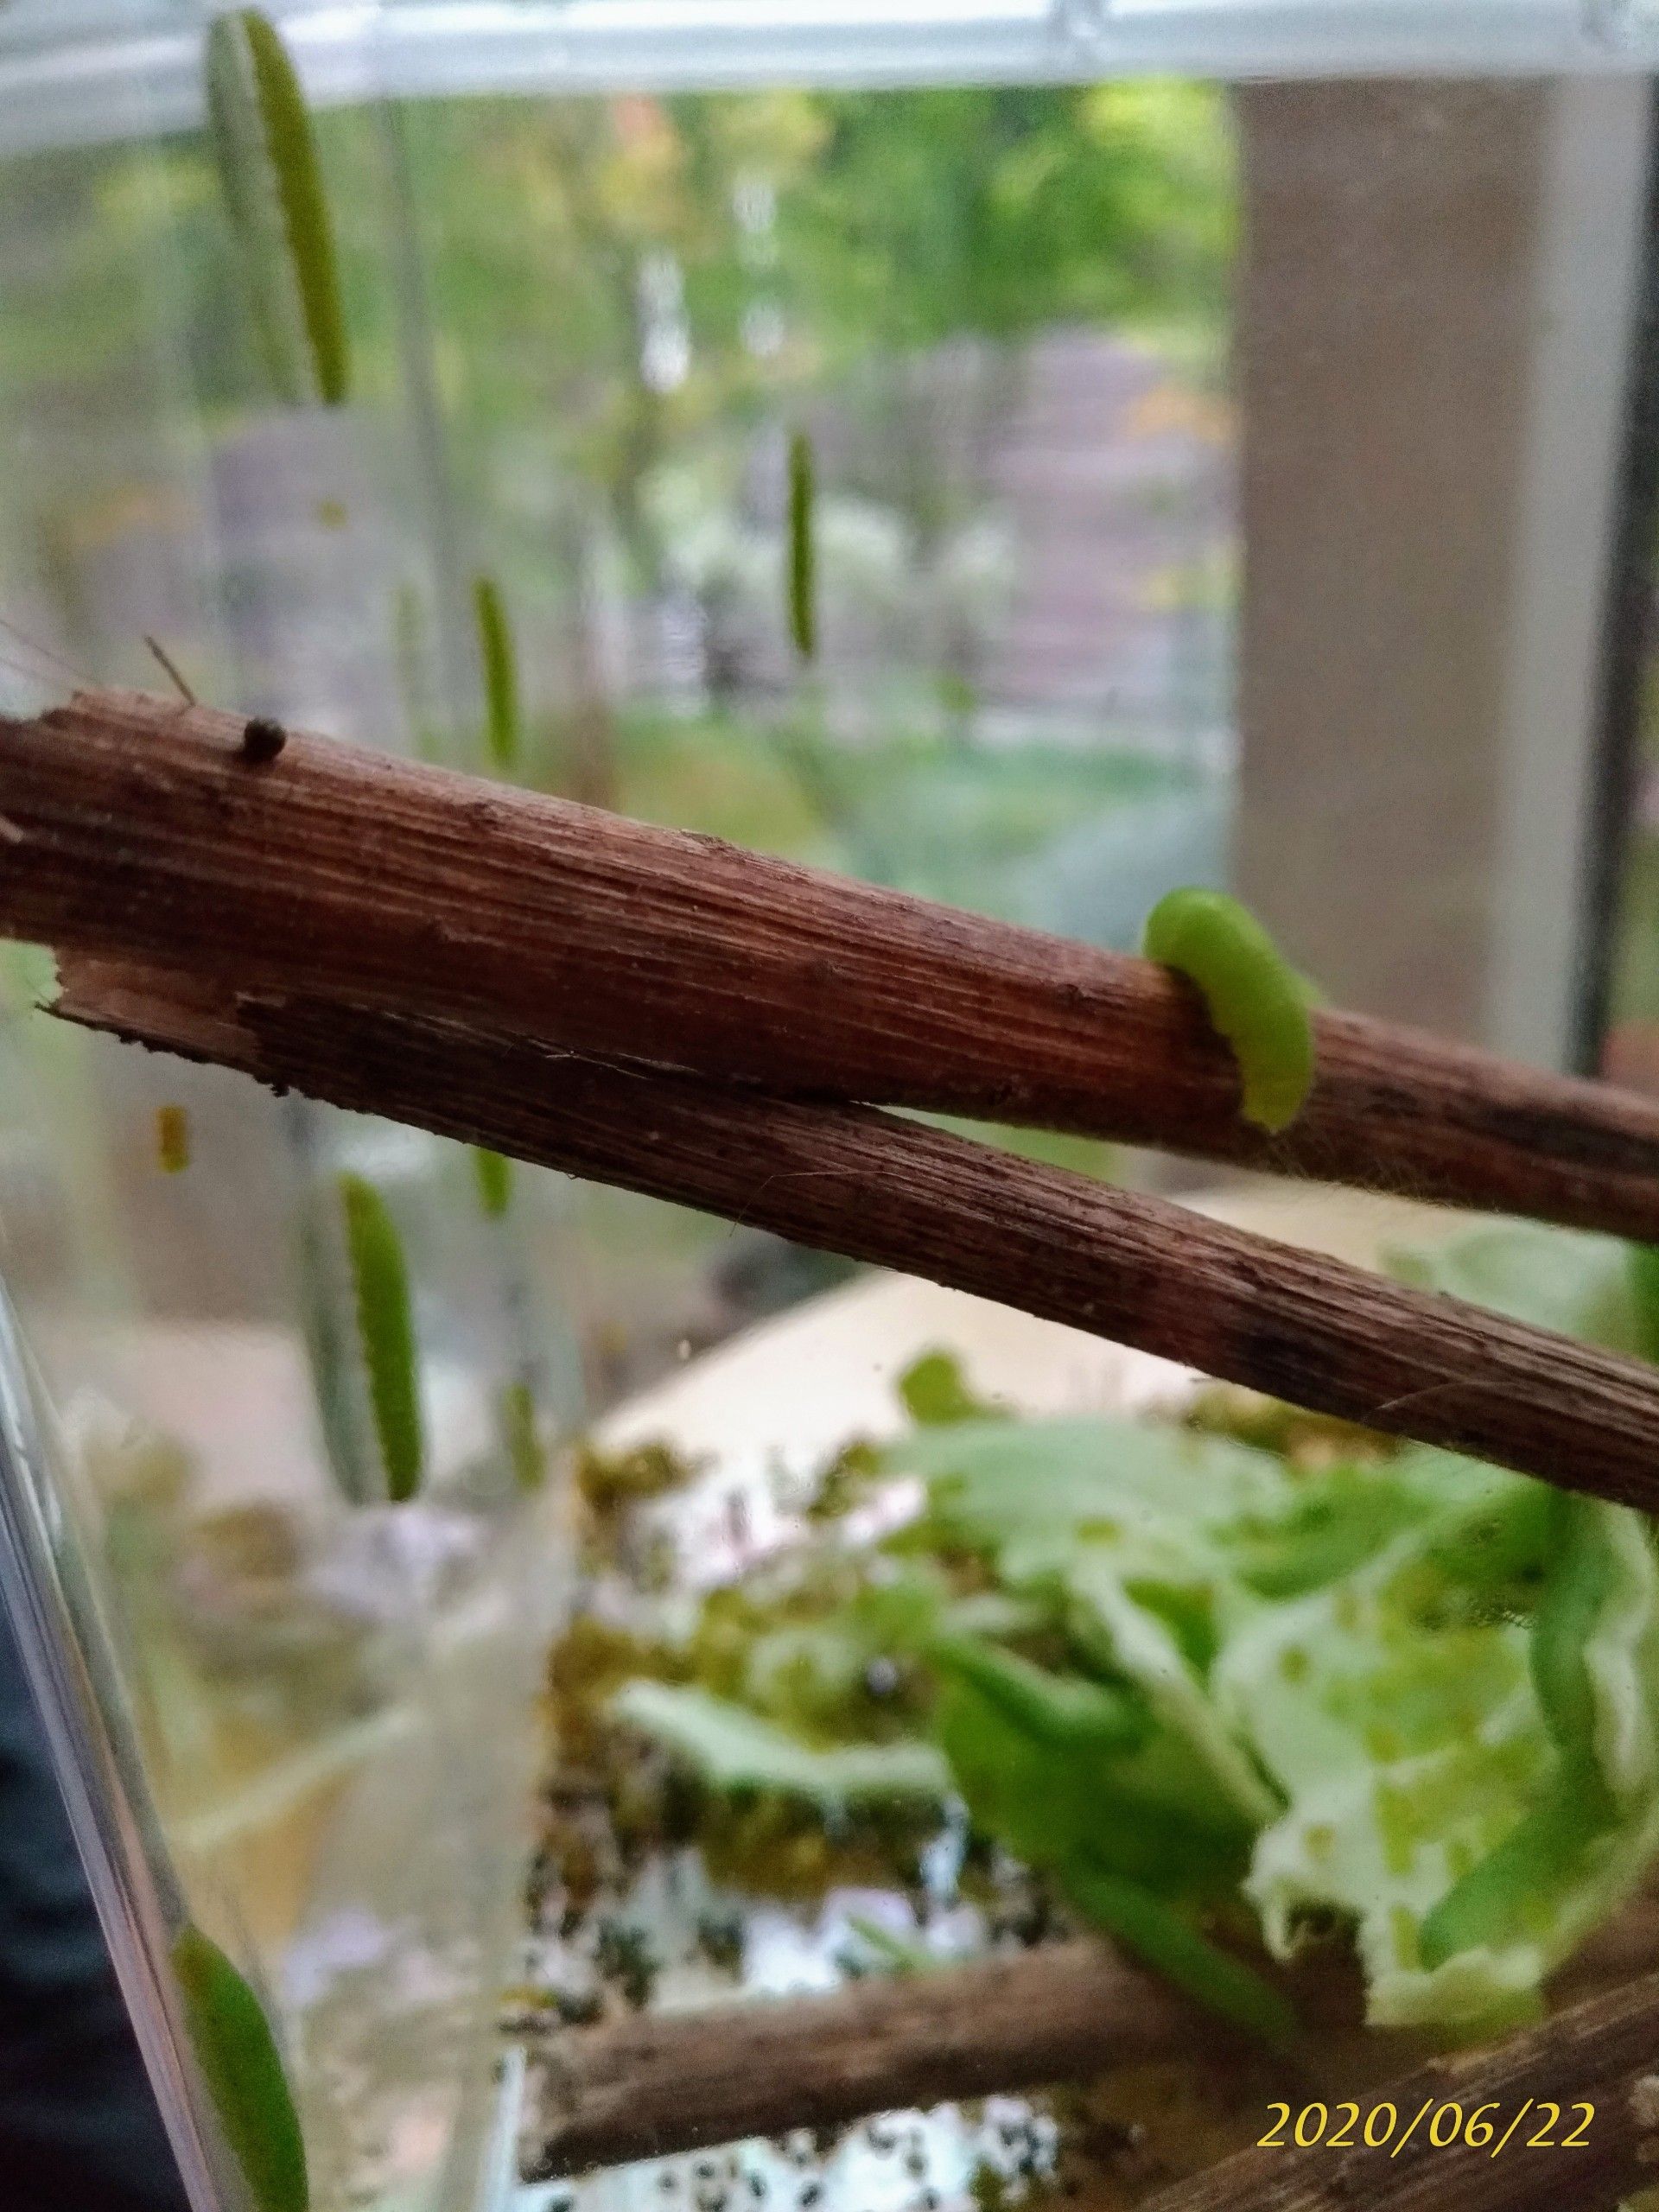 モンシロチョウの青虫を飼育3 飼育ケースで観察 憧れの雑木のお庭をめざして Woods Garden 楽天ブログ